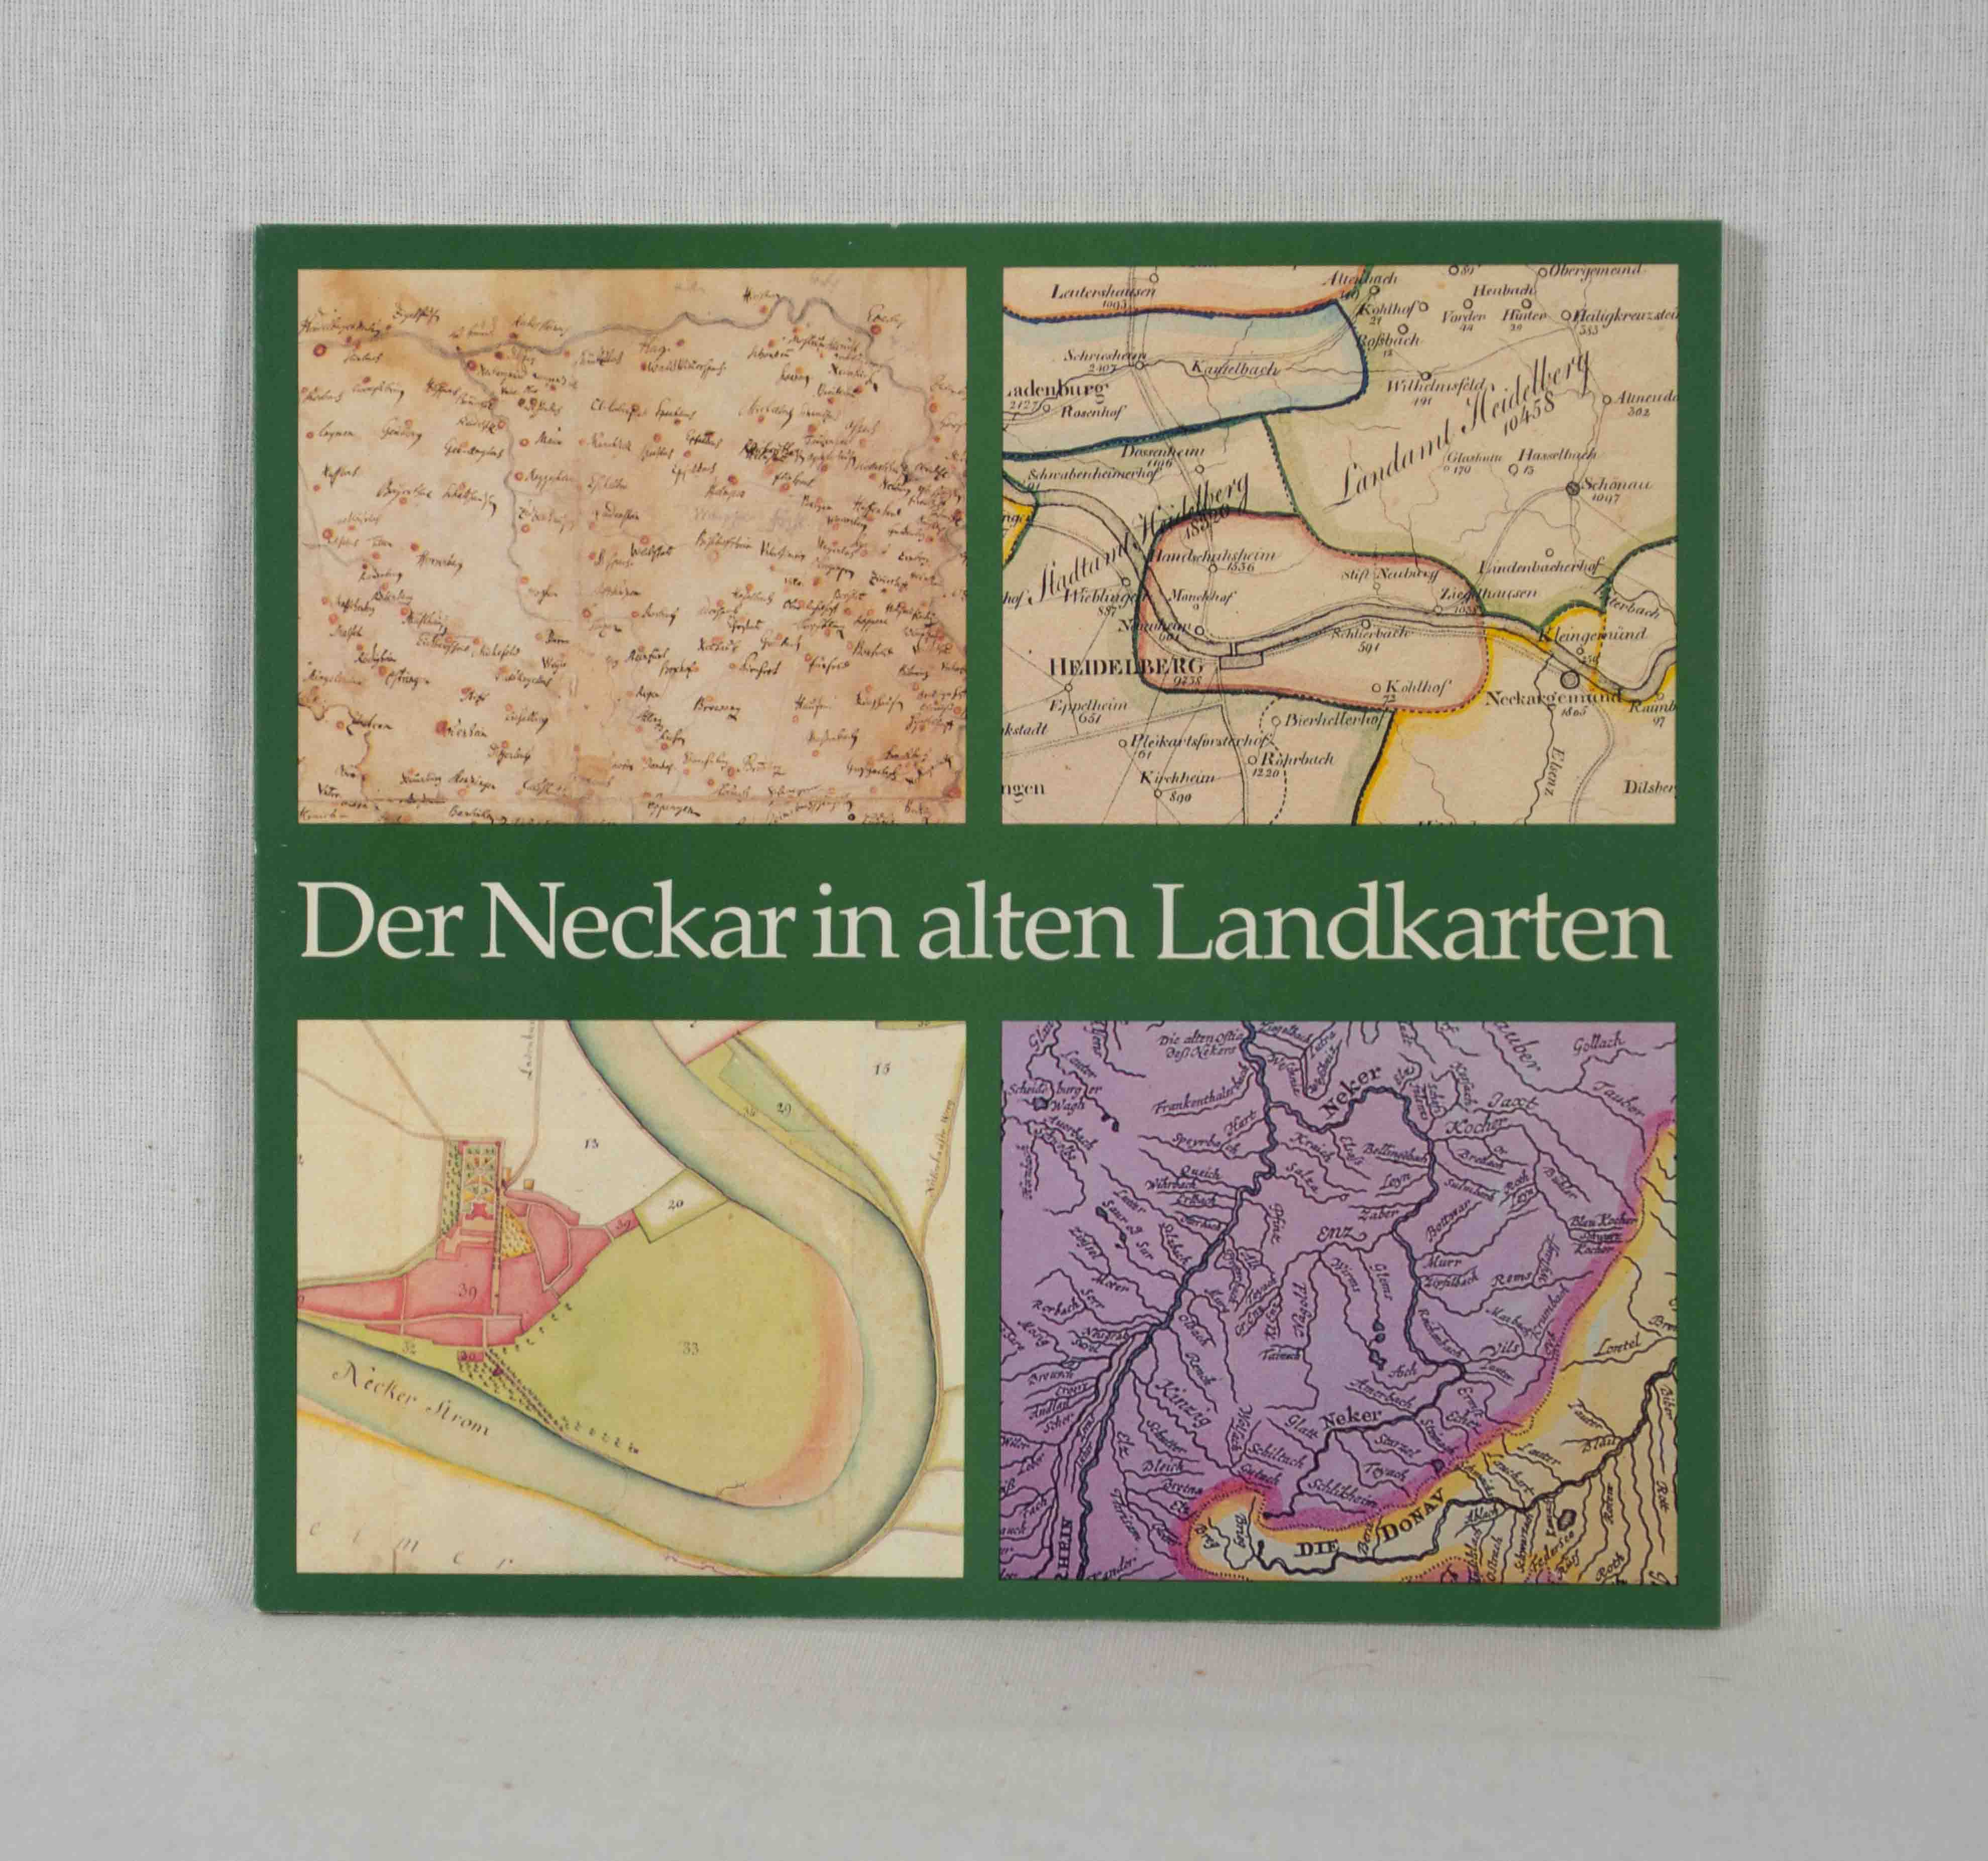 Der Neckar in alten Landkarten: Eine Ausstellung der Badischen Landesbibliothek. - Römer, Gerhard (Herausgeber), Irene-Annette Bergs Heinz Musall u. a.